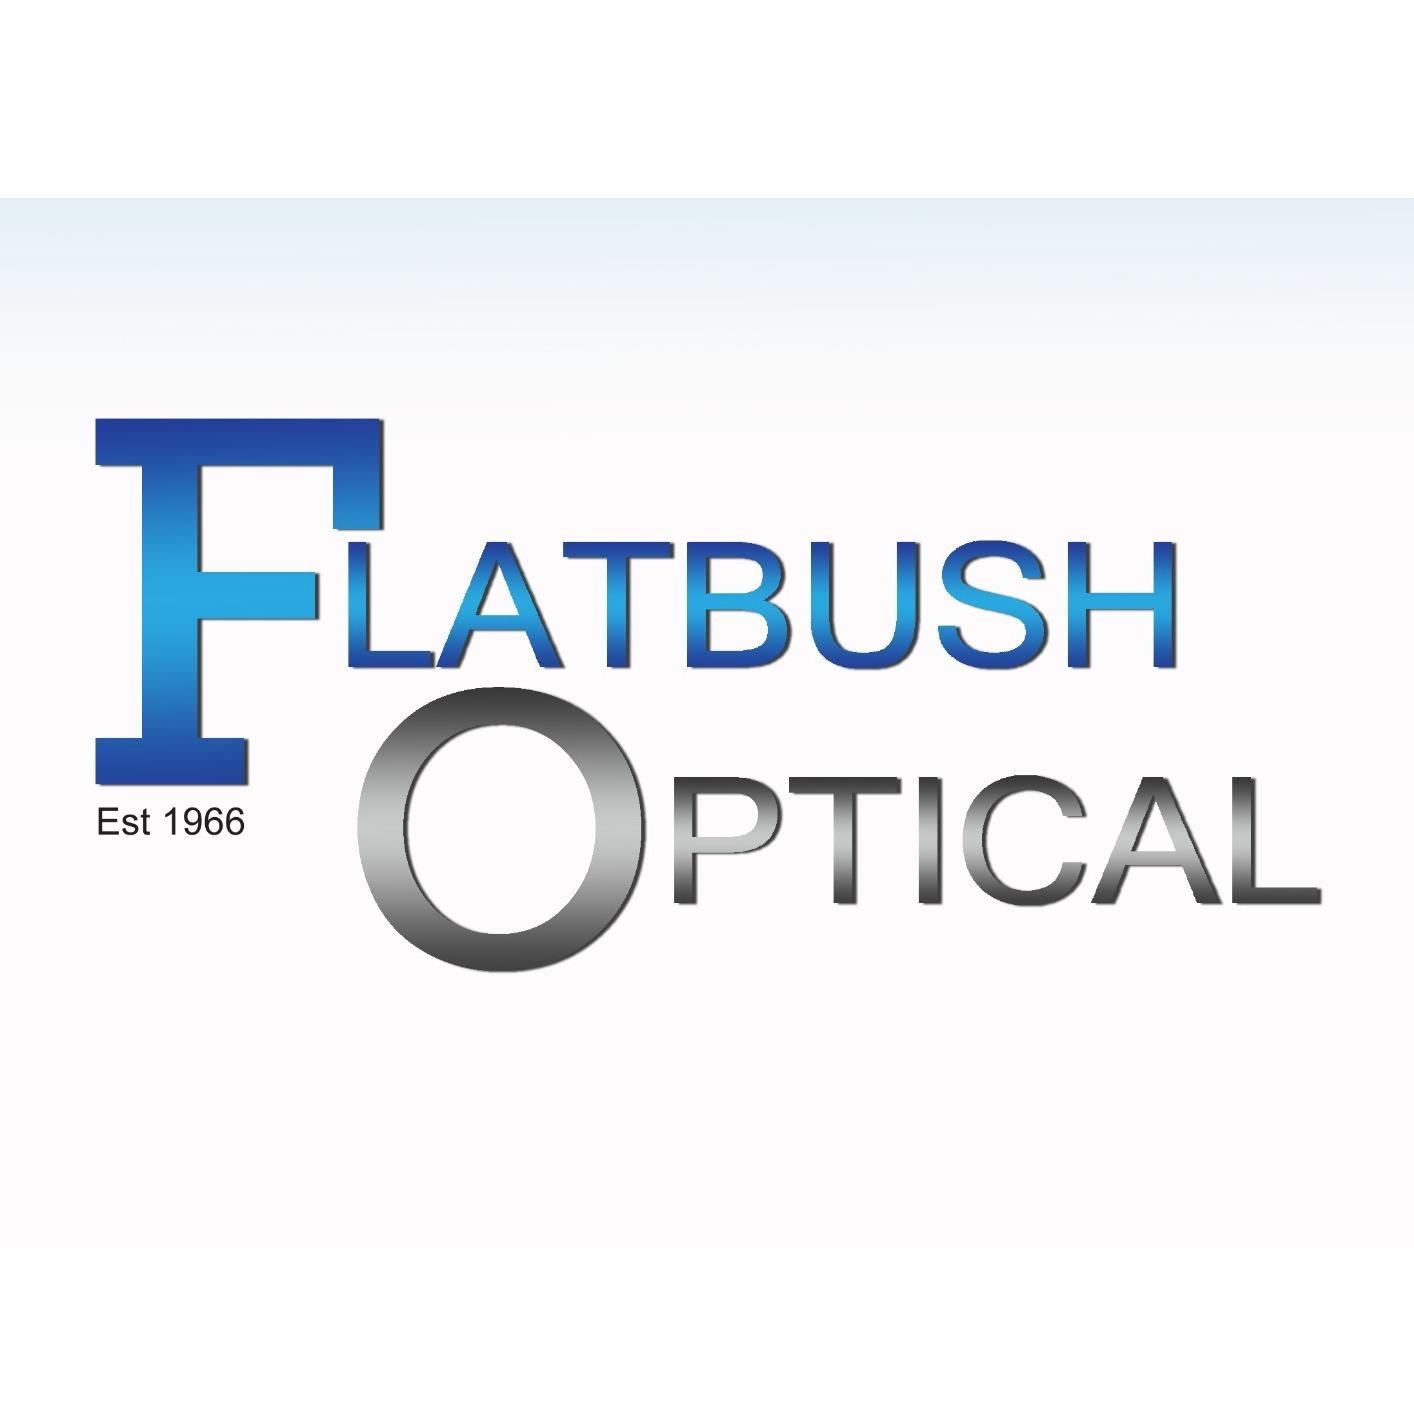 Flatbush Optical of Flatlands ave Photo